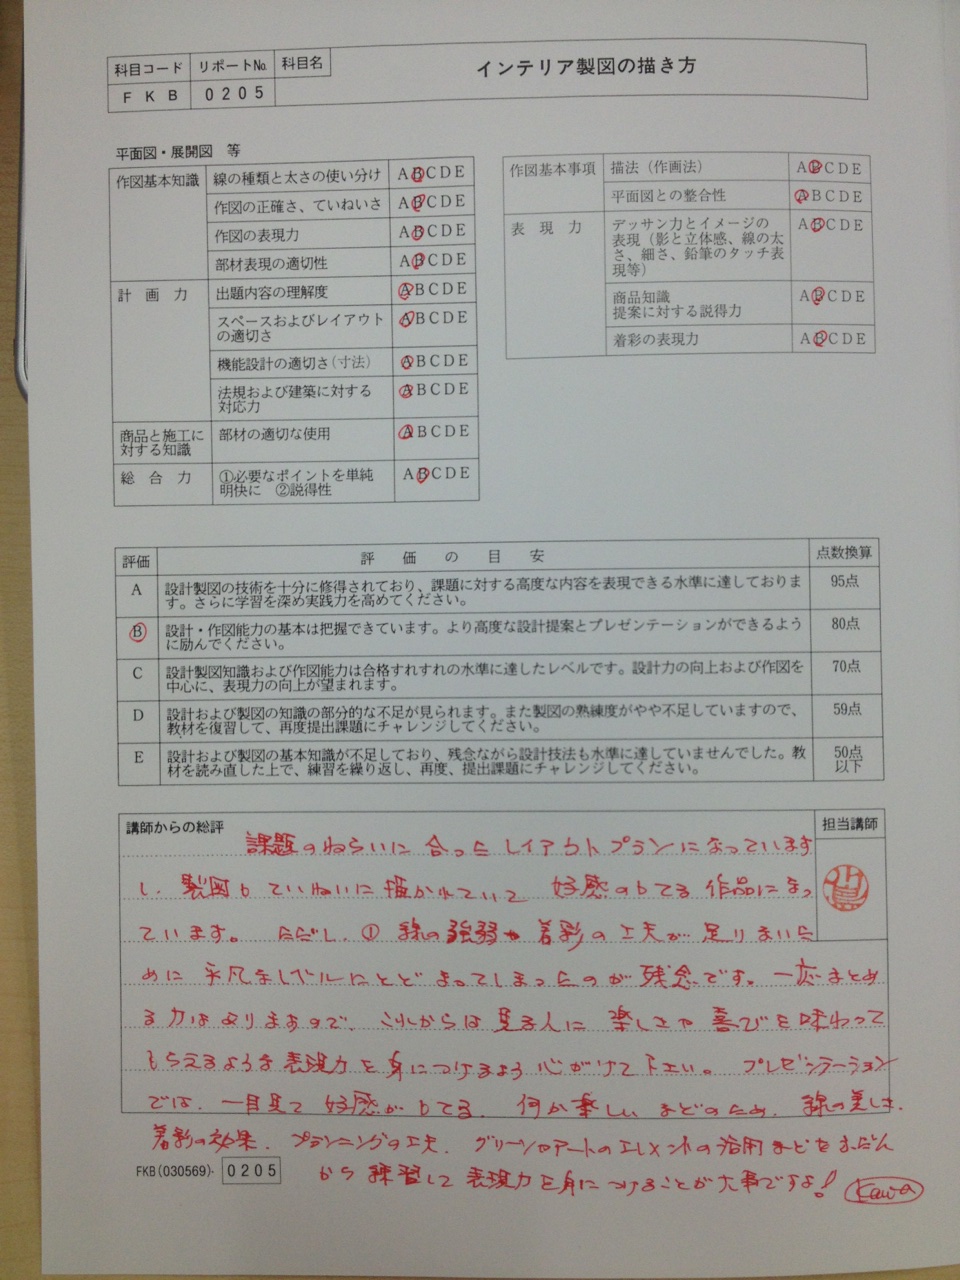 https://www.lixil-reformshop.jp/shop/SC00182004/2014/08/11/IMG_9705.jpg